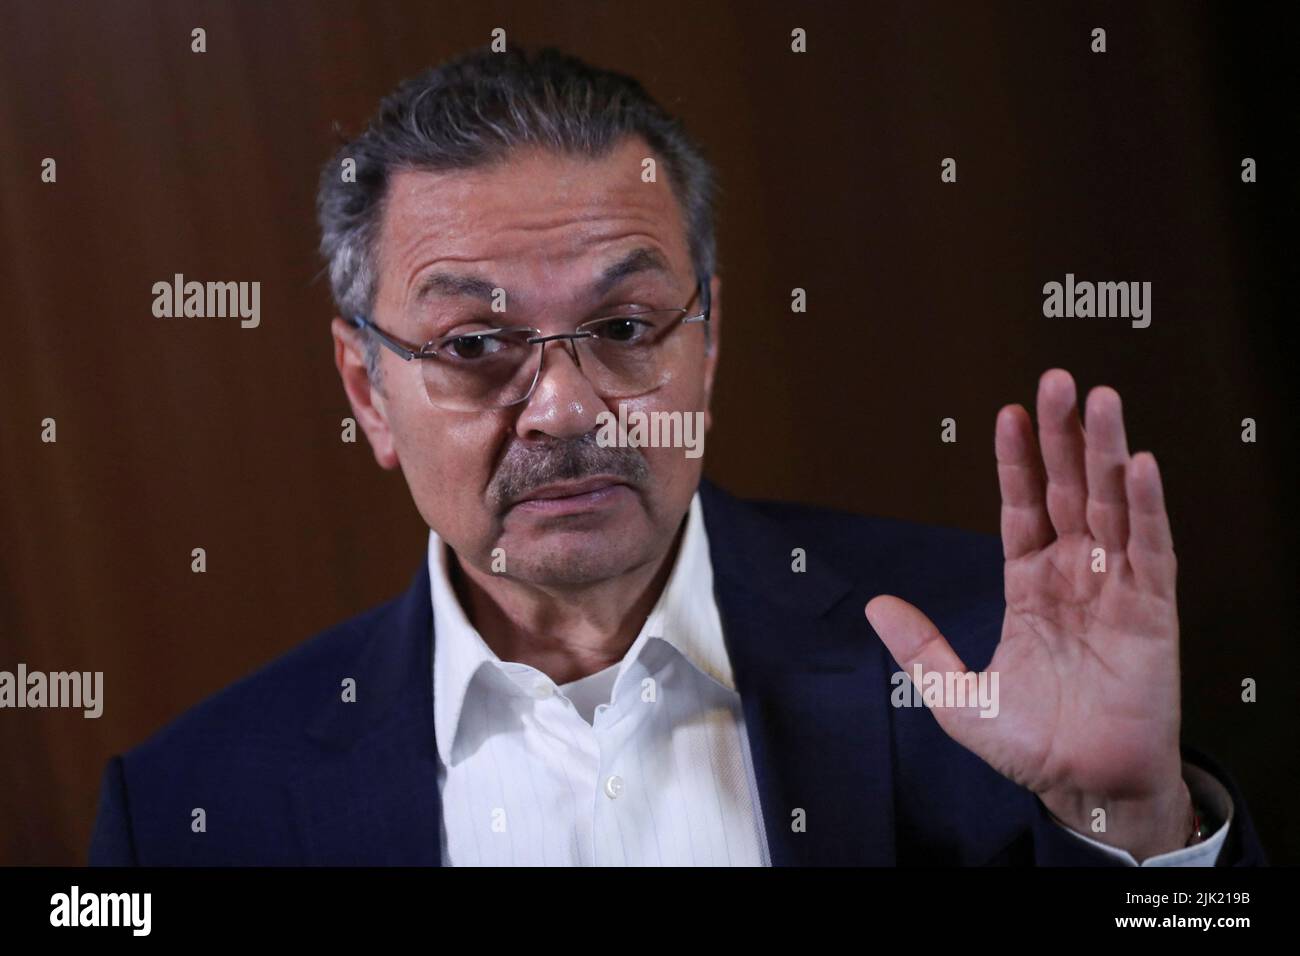 Octavio Romero, Director Ejecutivo de Pemex, habla durante una entrevista con Reuters en la sede de la petrolera estatal Pemex en Ciudad de México, México, el 28 de julio de 2022. REUTERS/Edgard Garrido Foto de stock